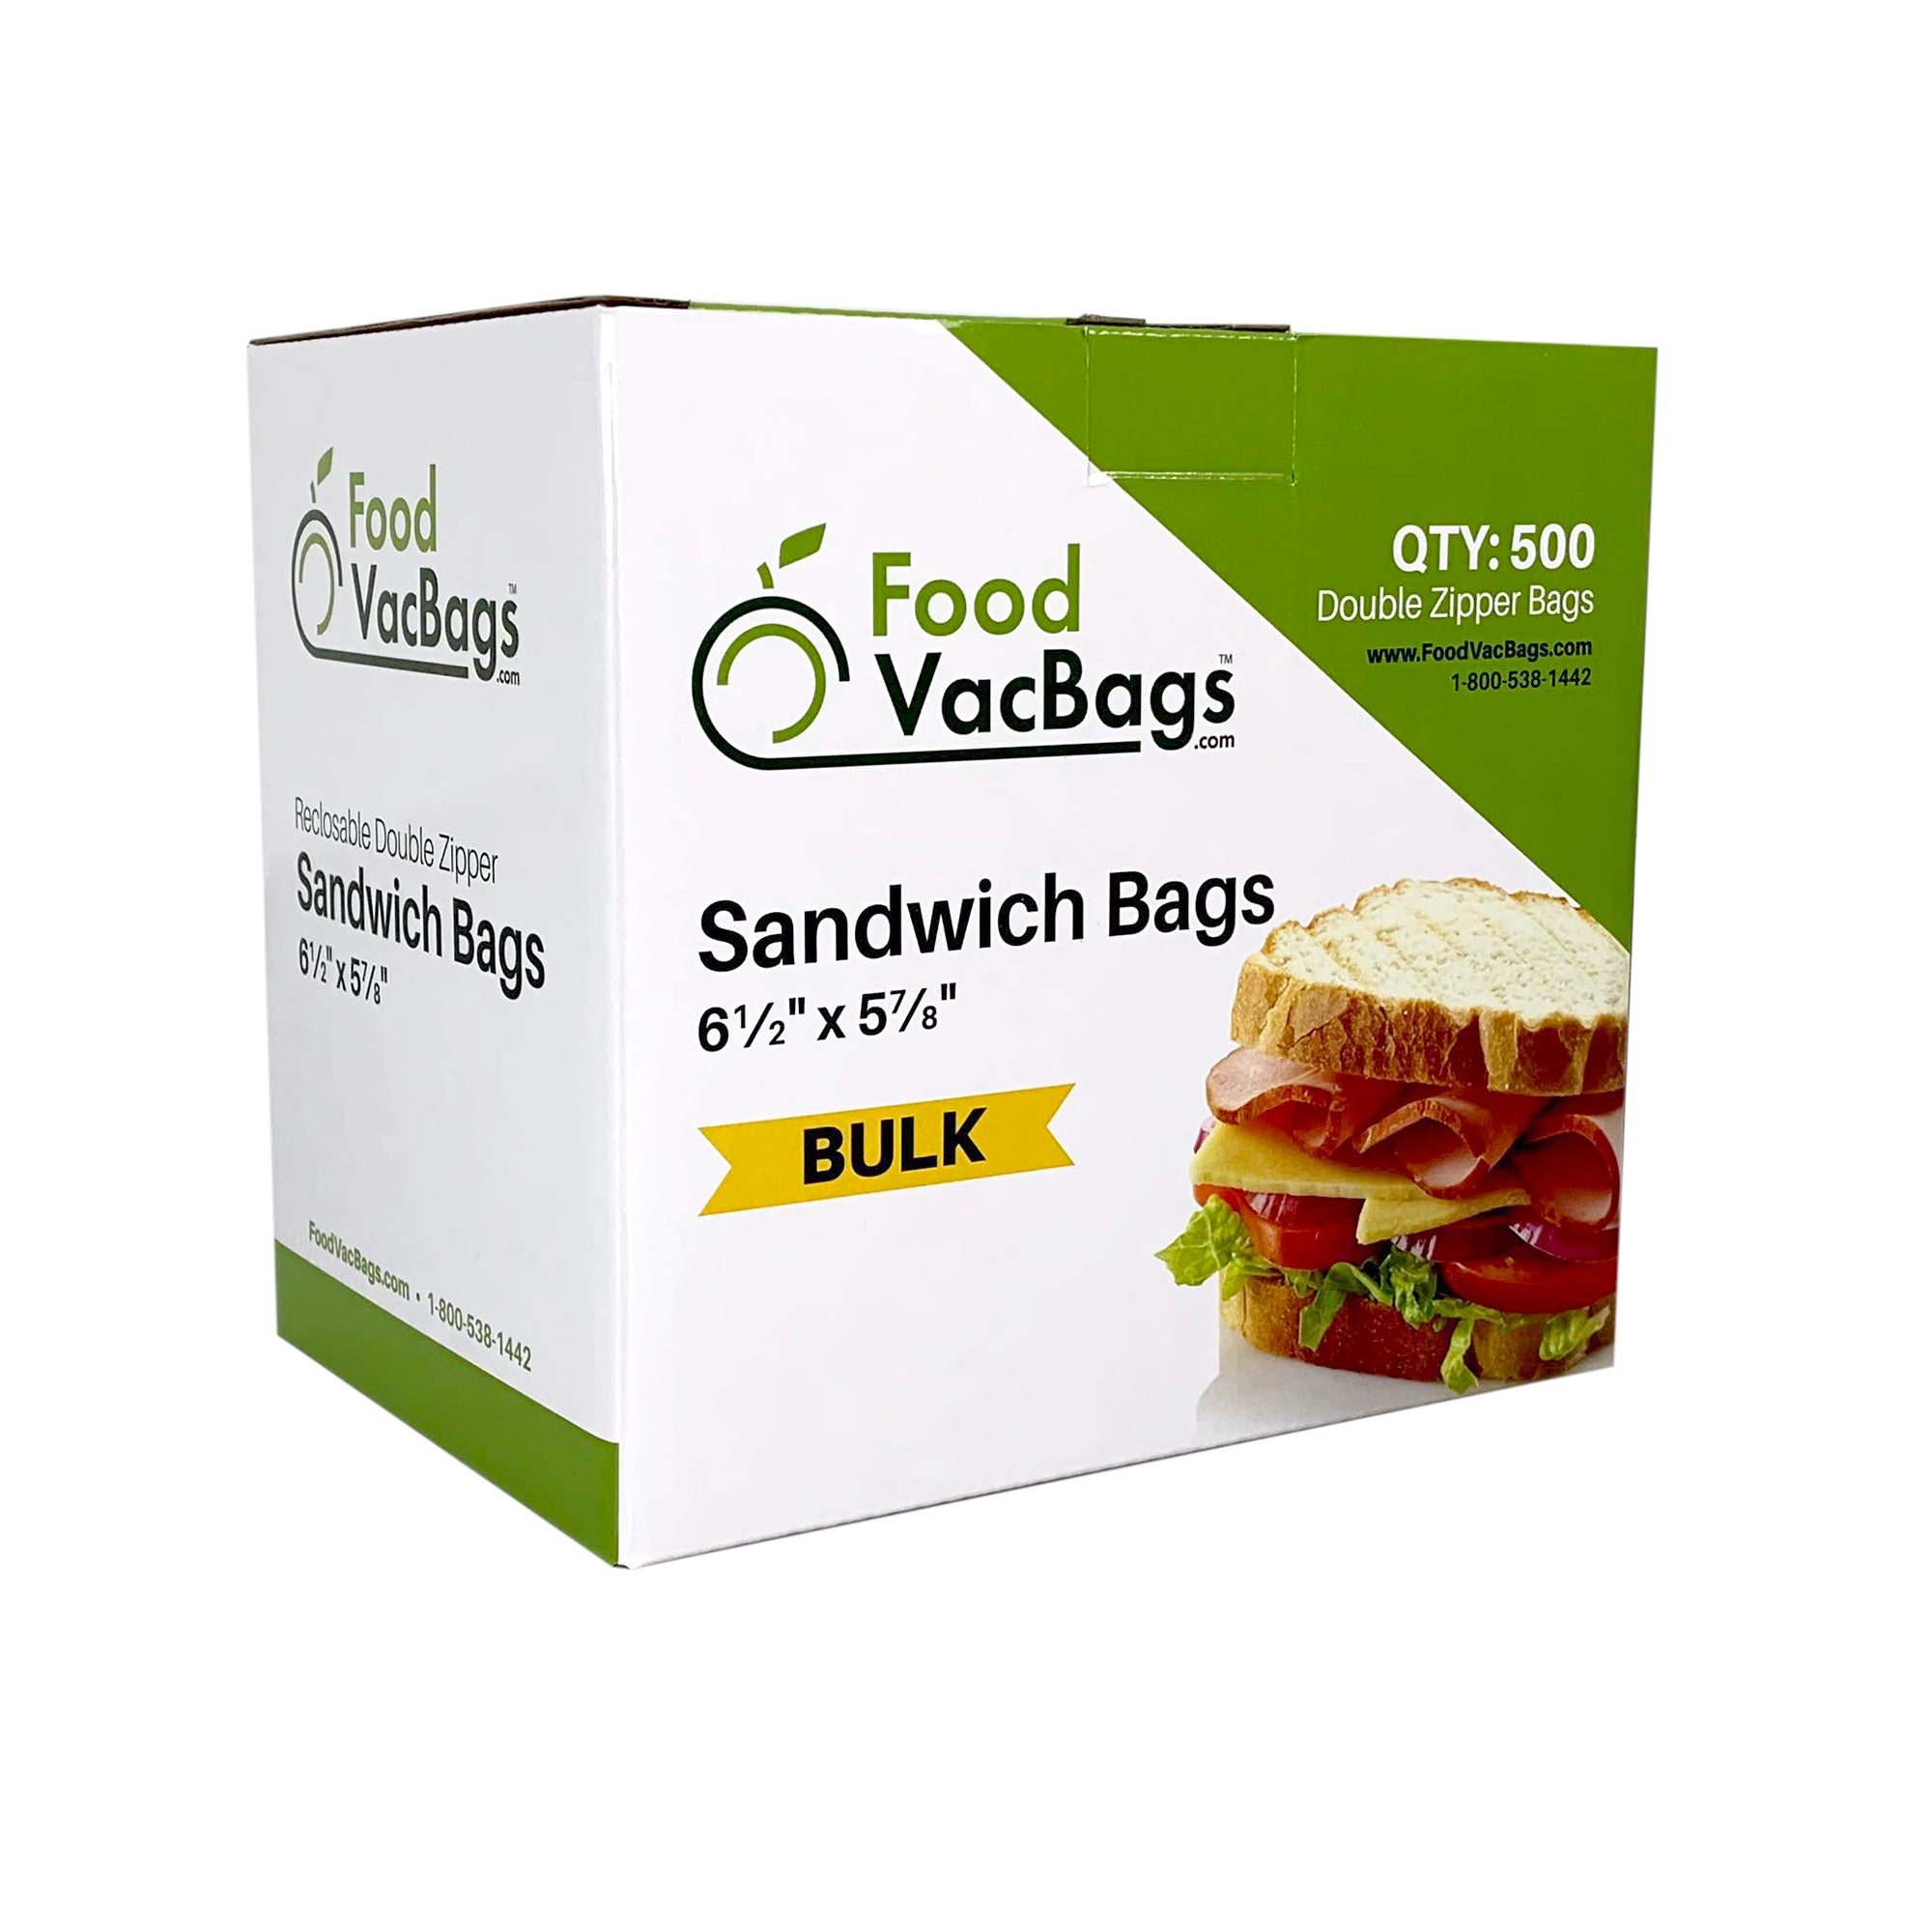 Ziploc, Storage Bags - Gallon Size, Count 1 - Zip Lock/Sandwich